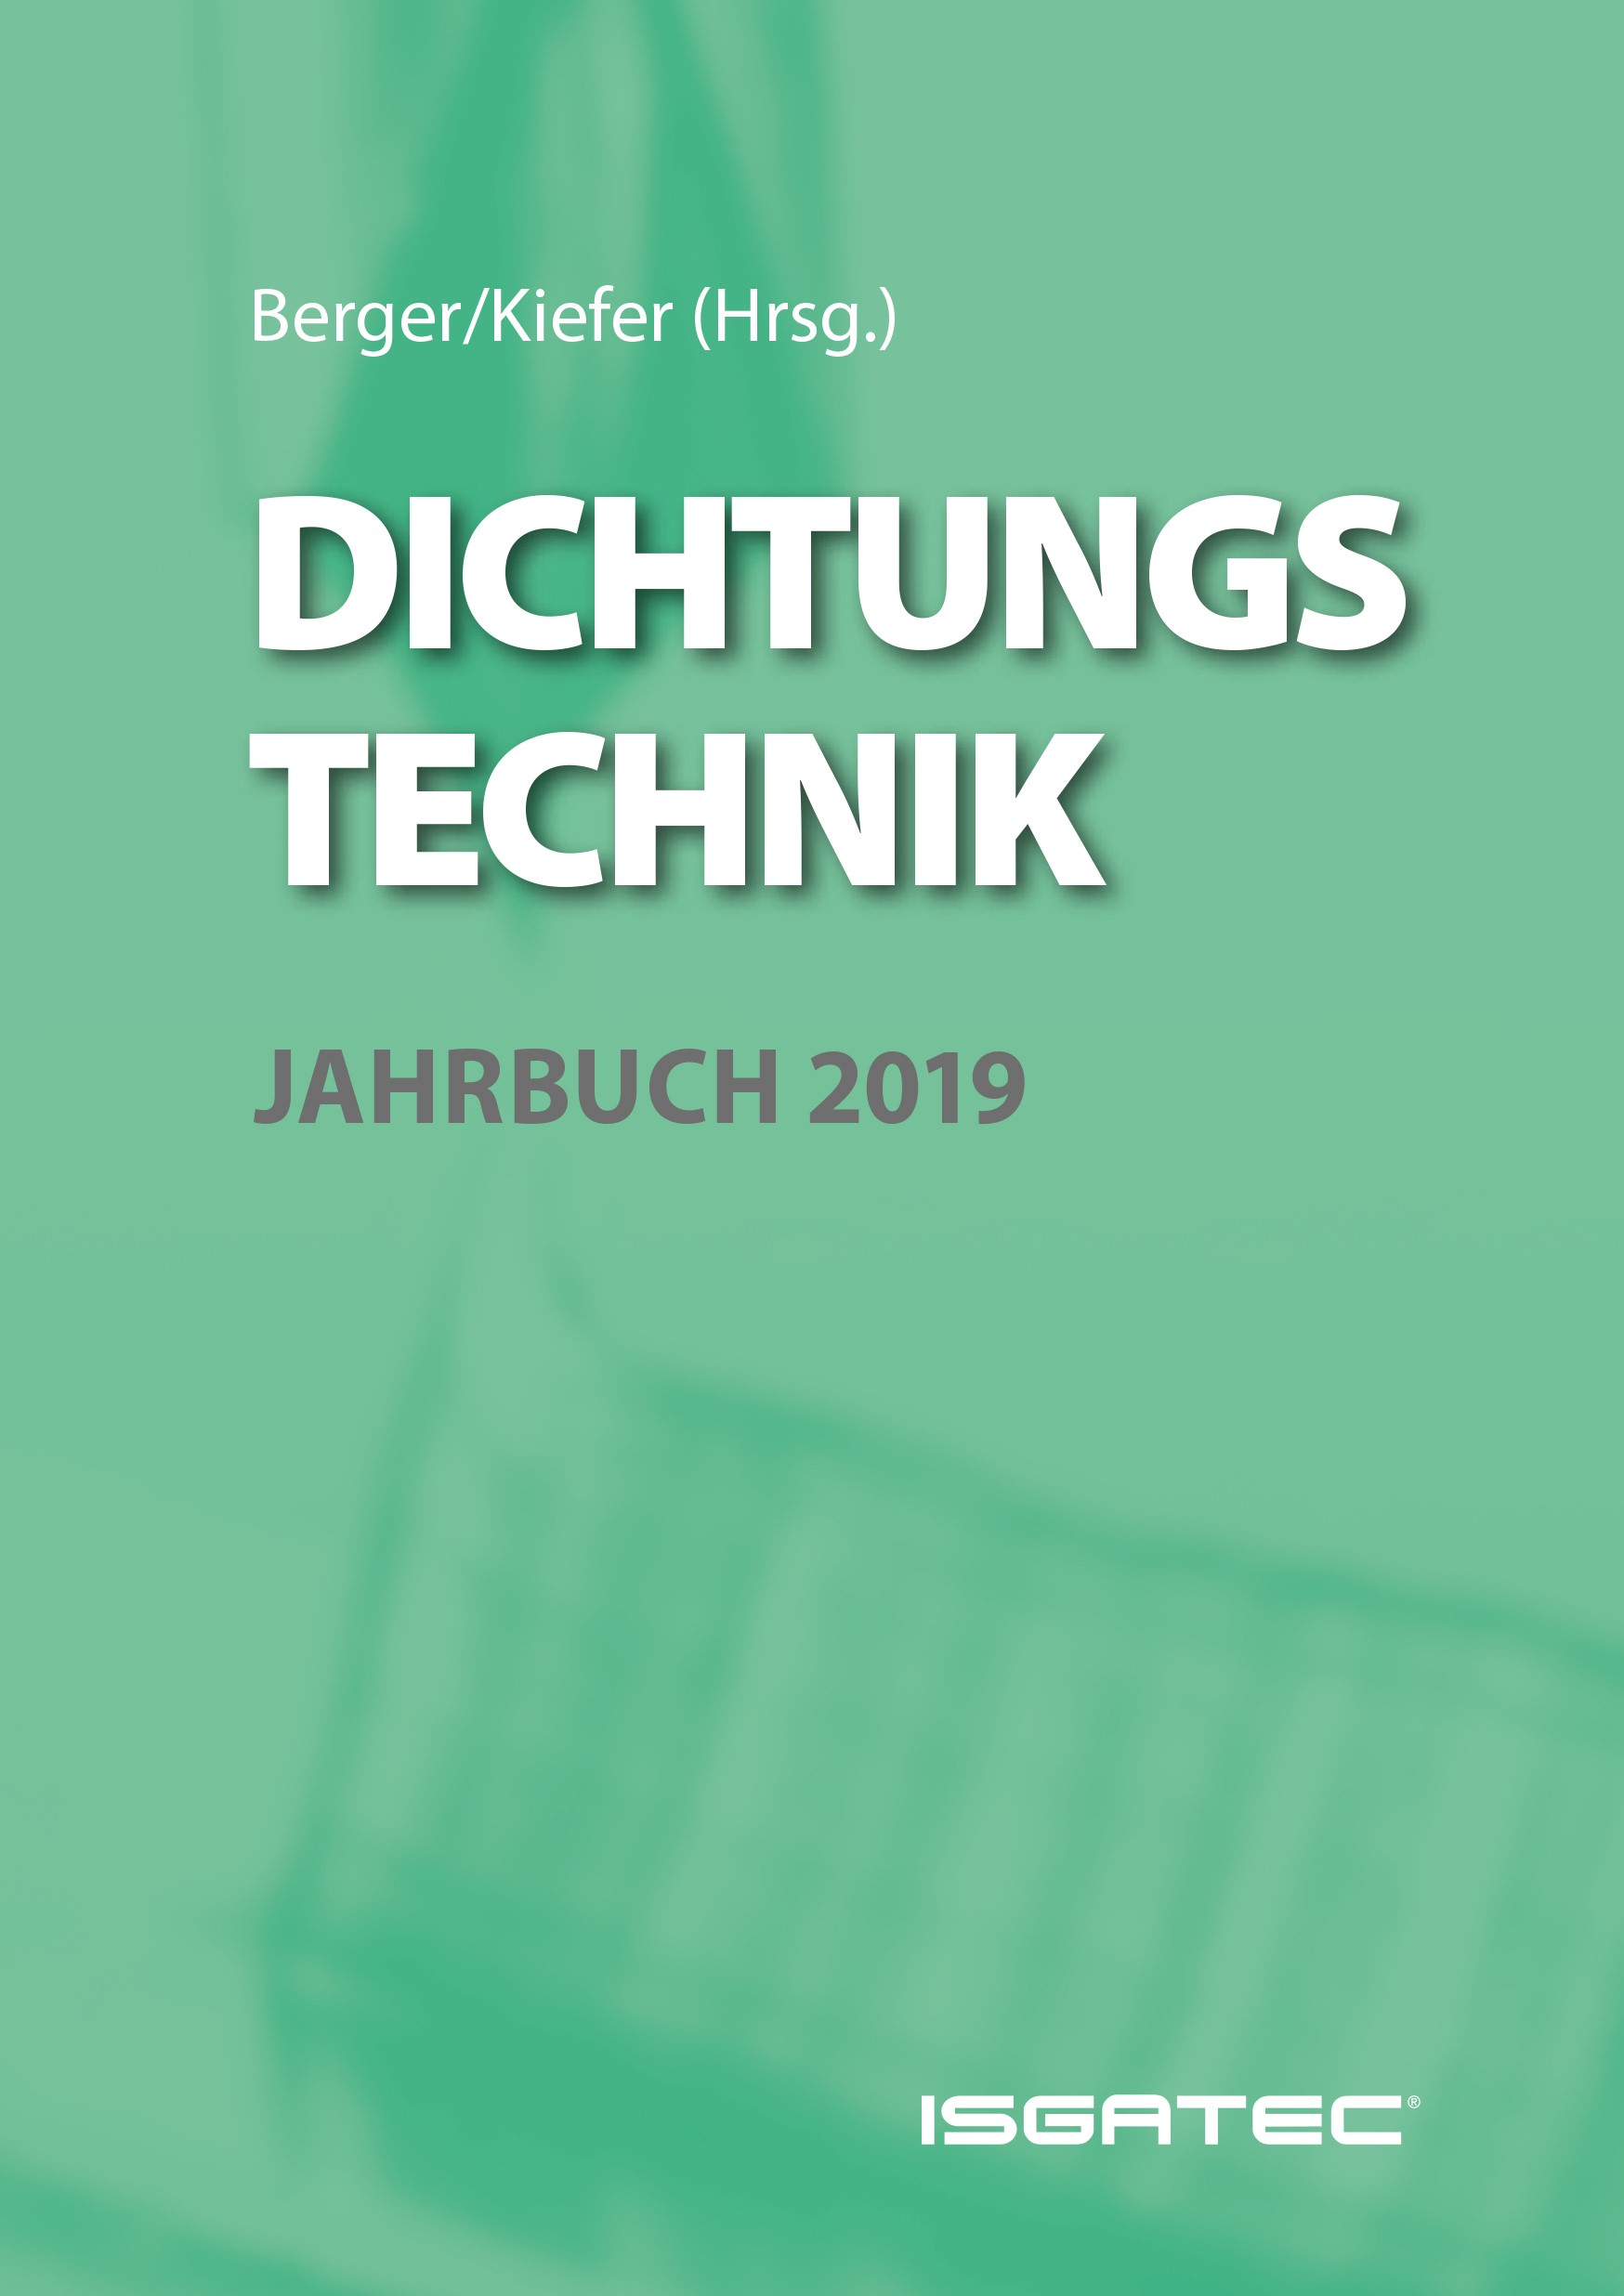 DICHTUNGSTECHNIK JAHRBUCH 2019